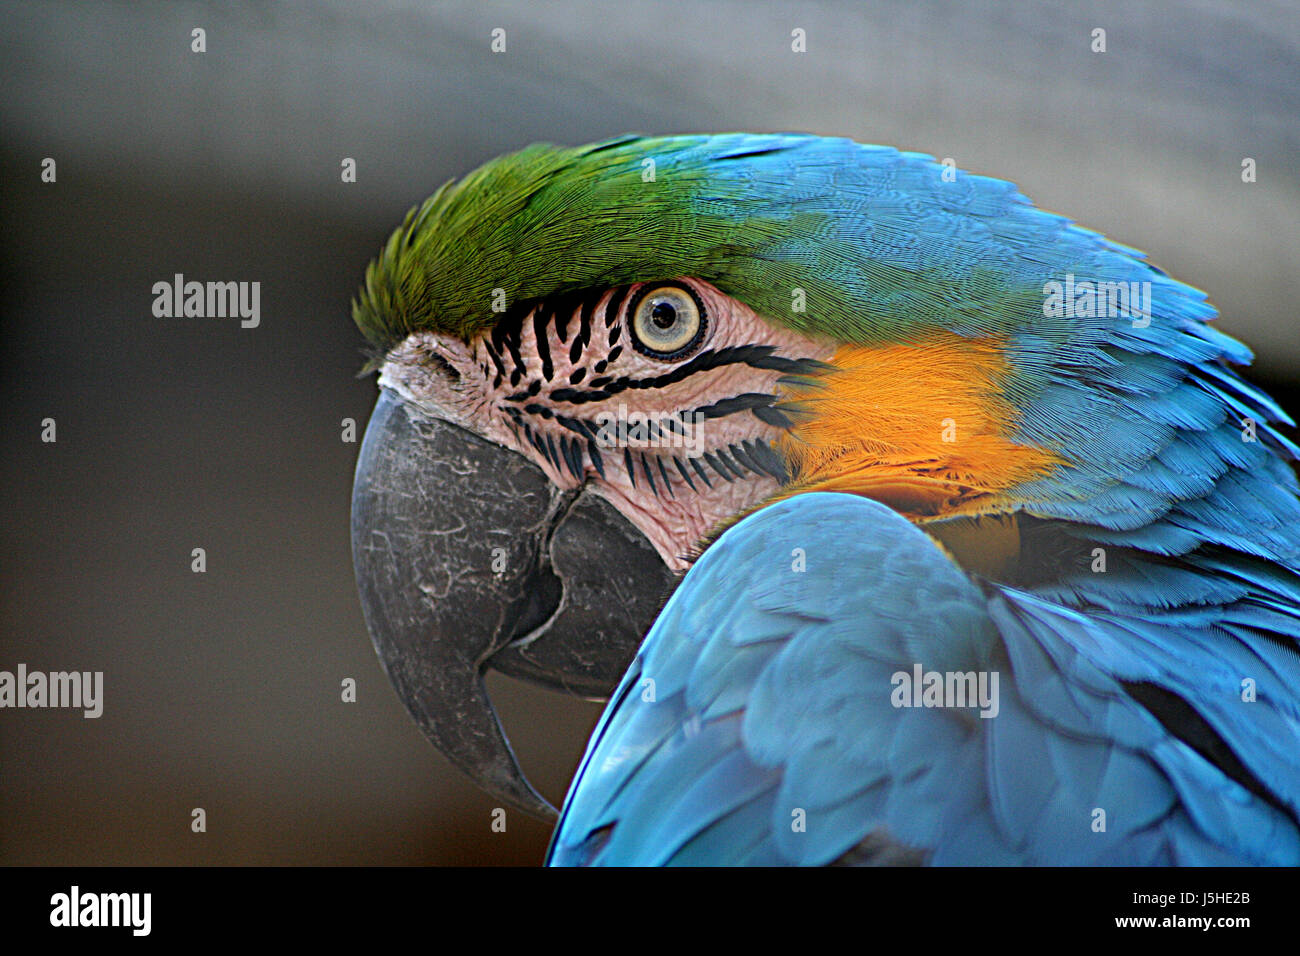 Makro Nahaufnahme Makro Aufnahme nahe Ansicht Vogel farbig bunt wunderschön Stockfoto